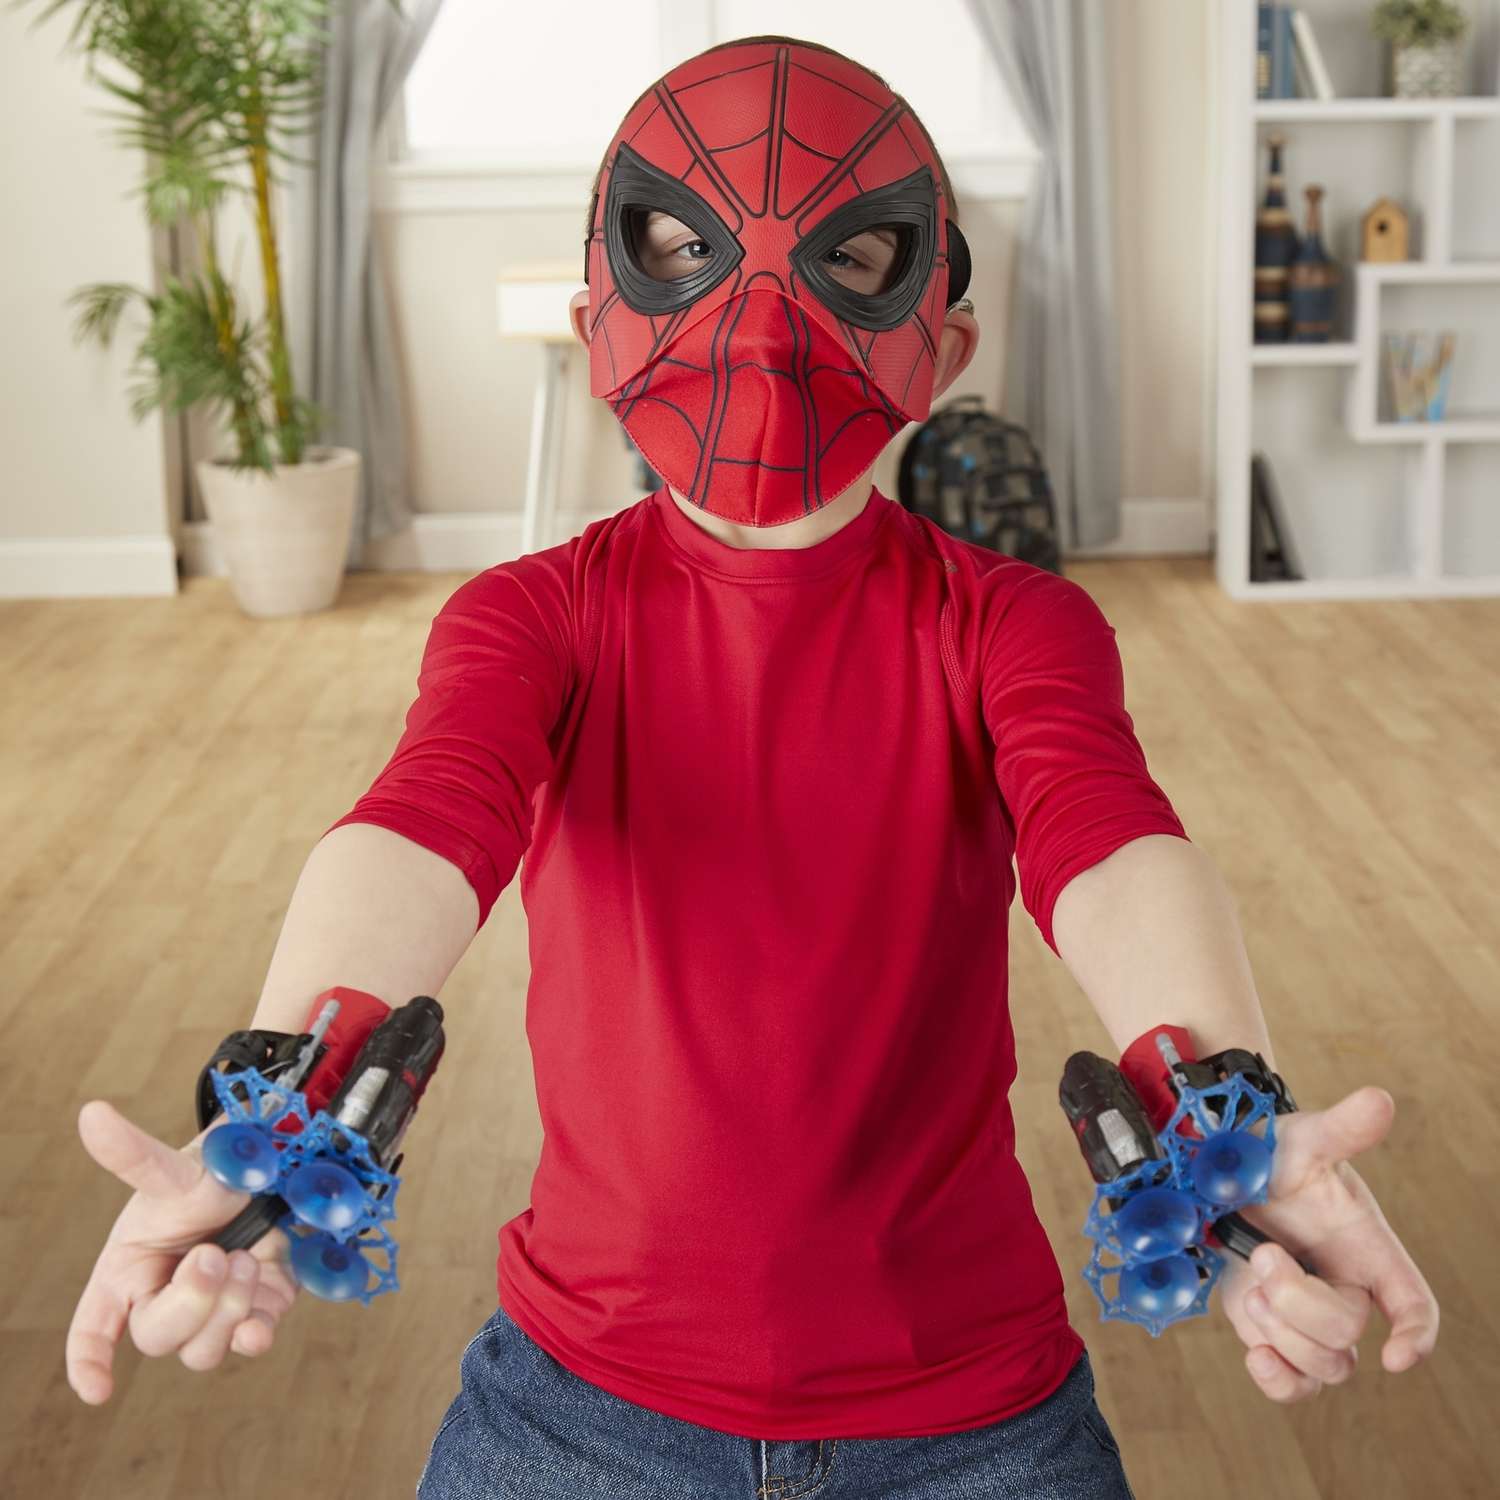 Набор игровой Человек-Паук (Spider-man) (SM) Человек-паук бластер+маска E5214EU4 - фото 5